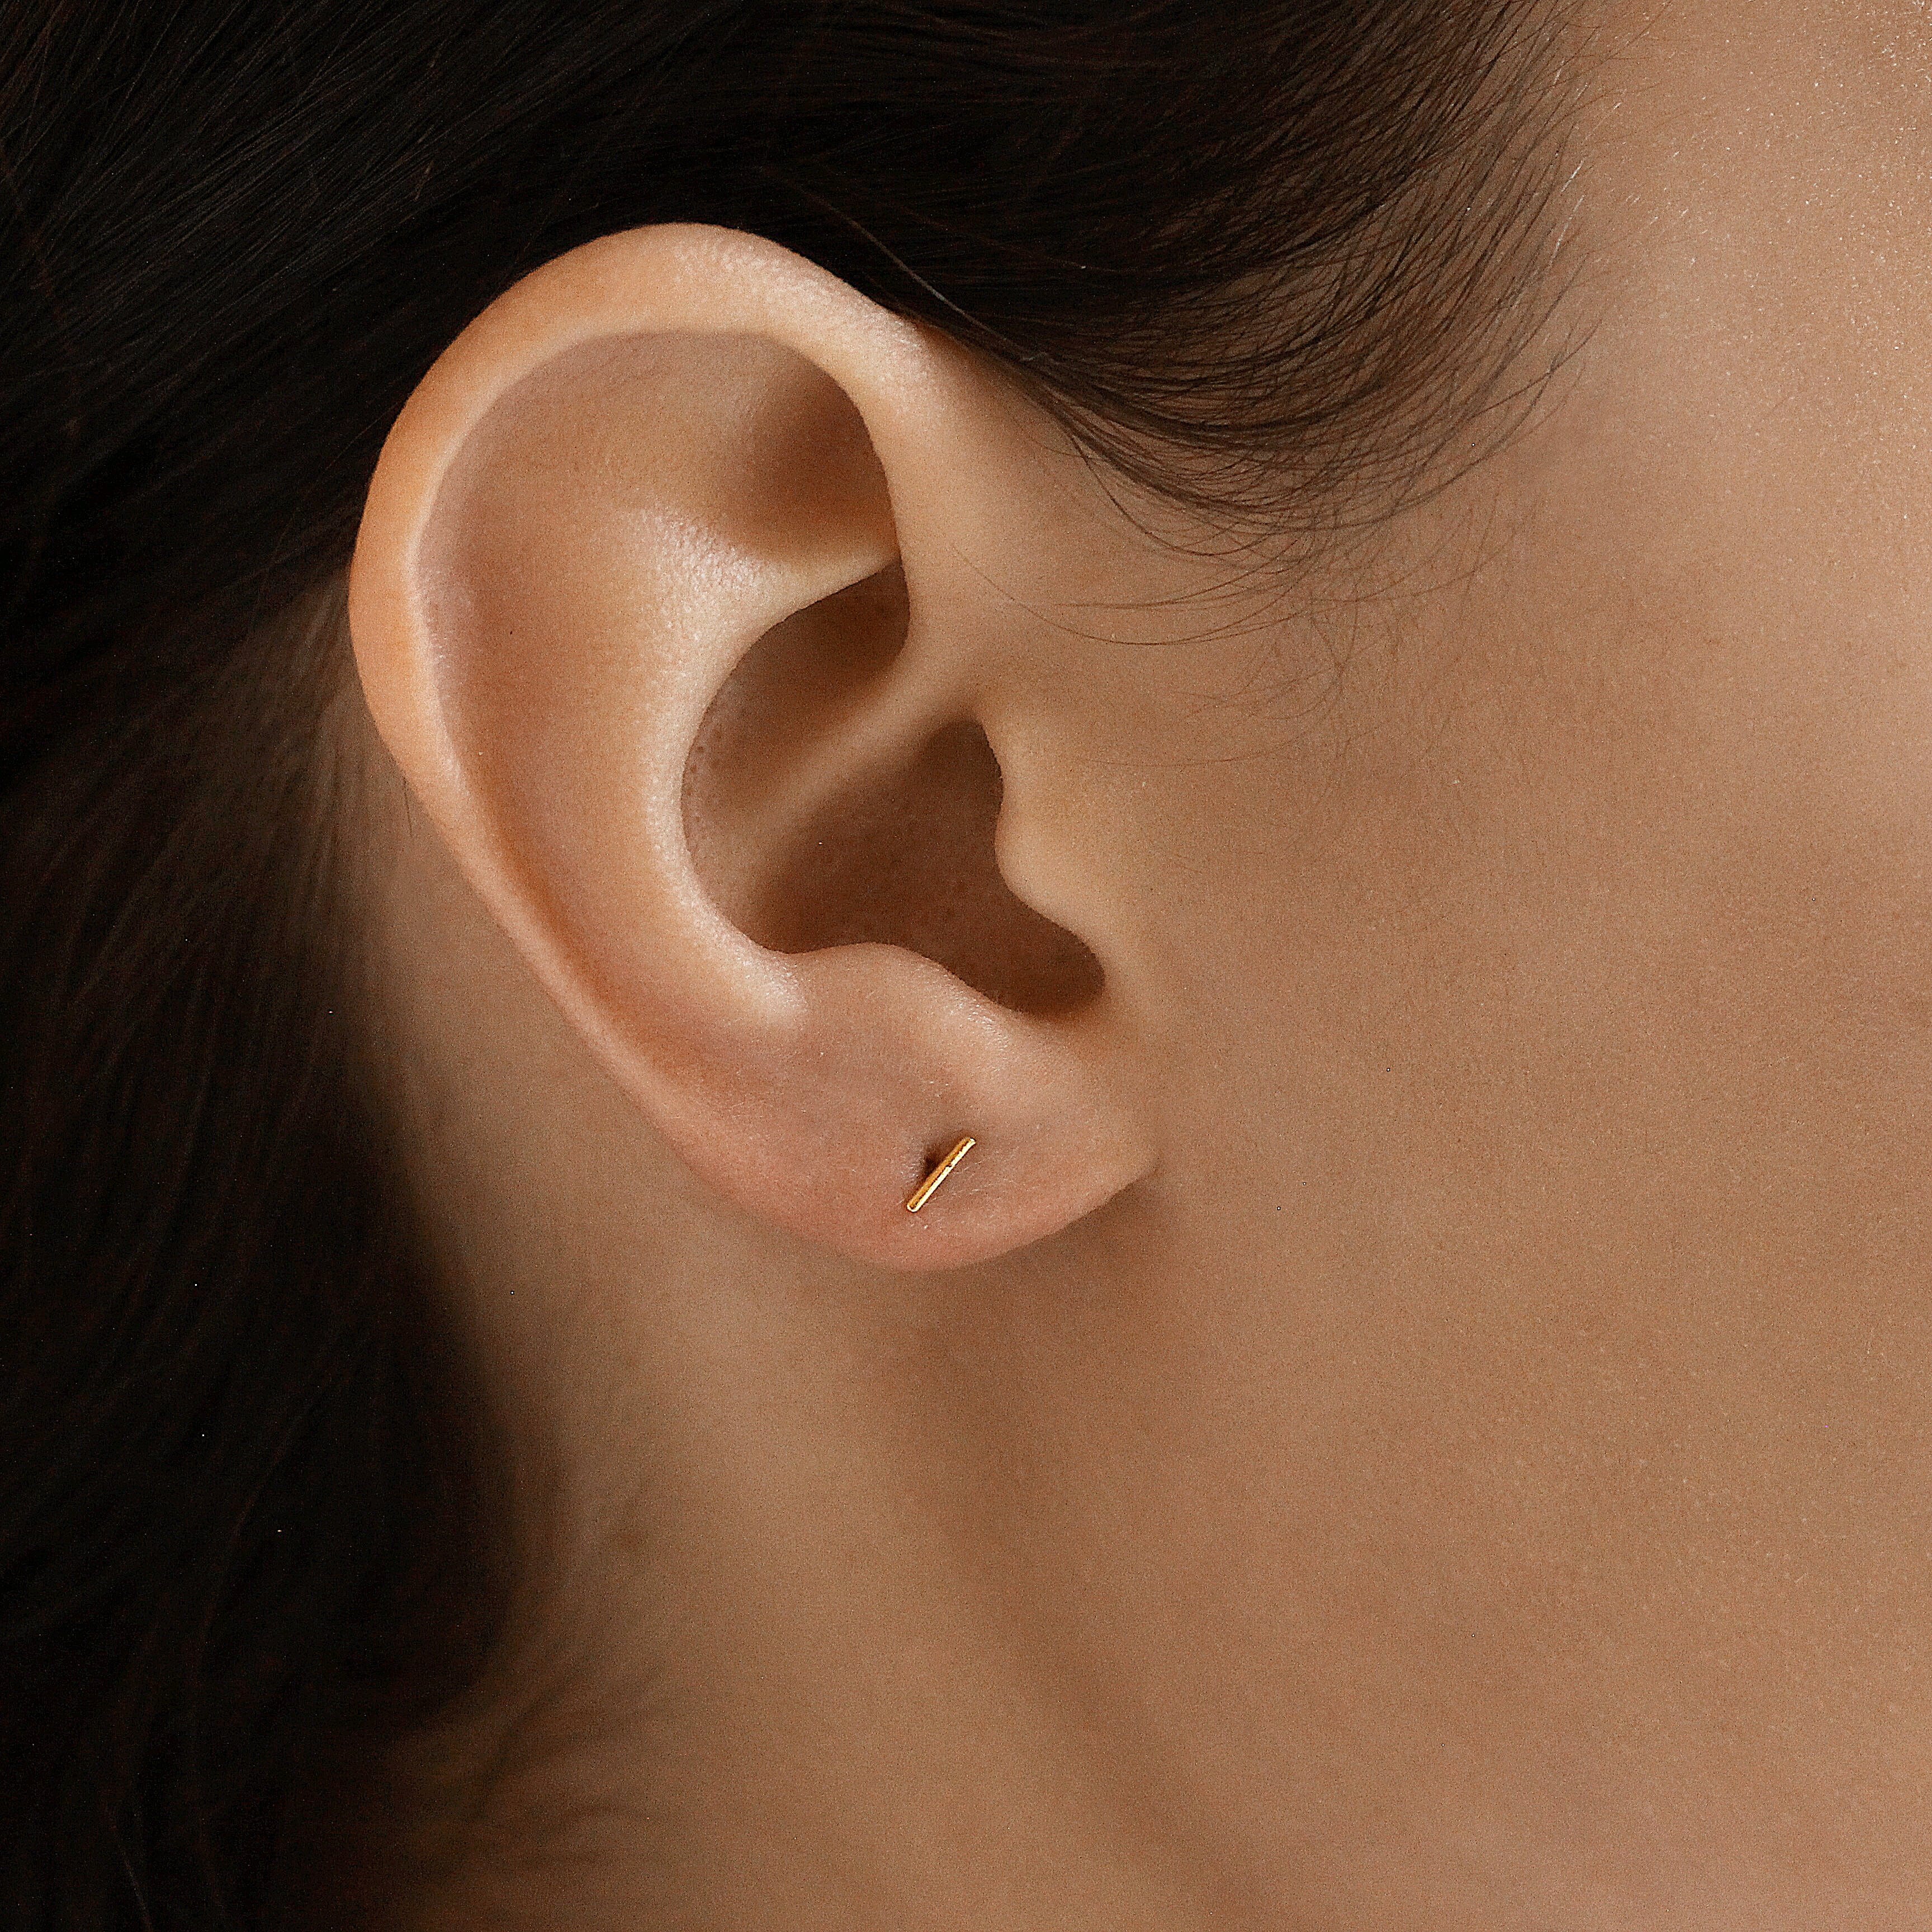 TAI JEWELRY Earrings Small Stick Earrings